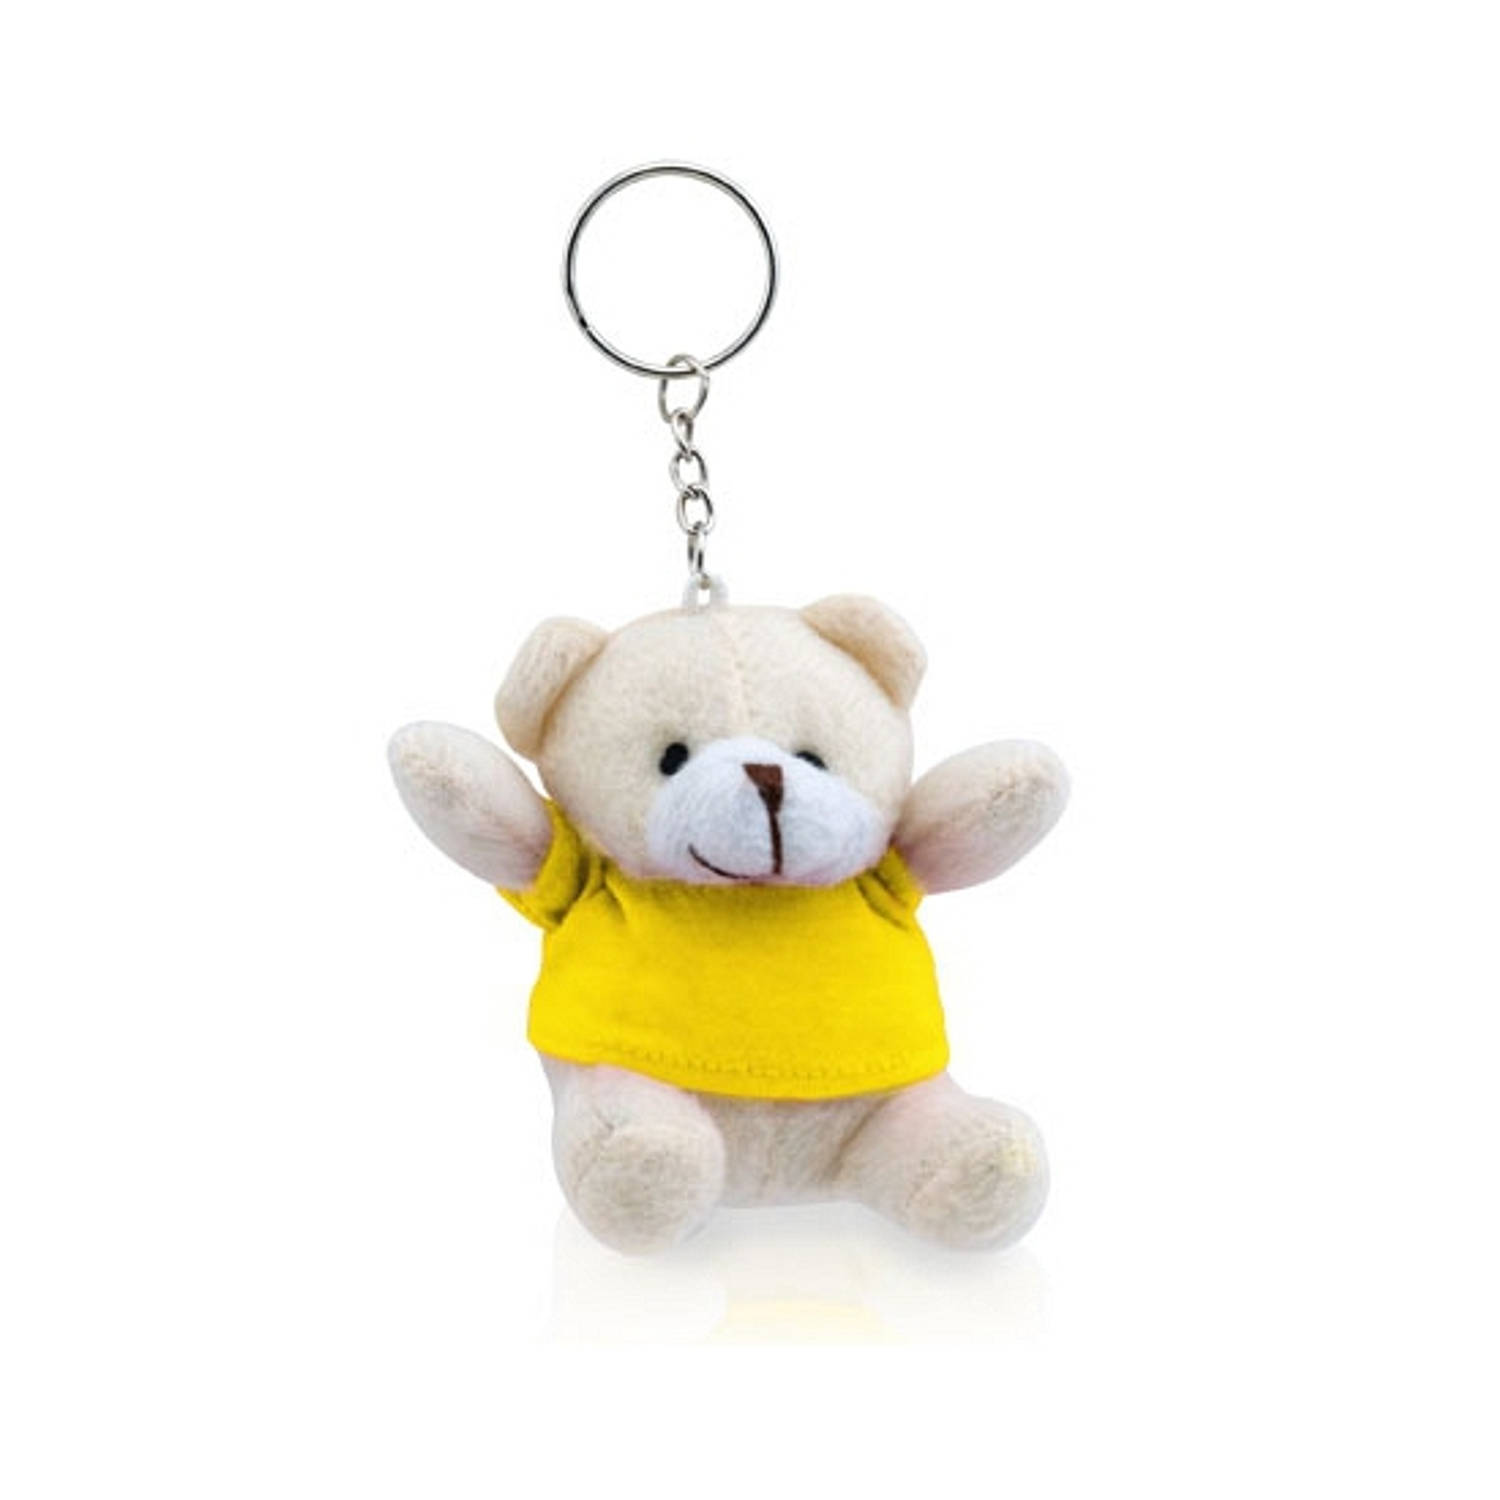 Pluche Teddybeer Knuffel Sleutelhanger Geel 8 Cm Beren Dieren Sleutelhangers Speelgoed Voor Kinderen